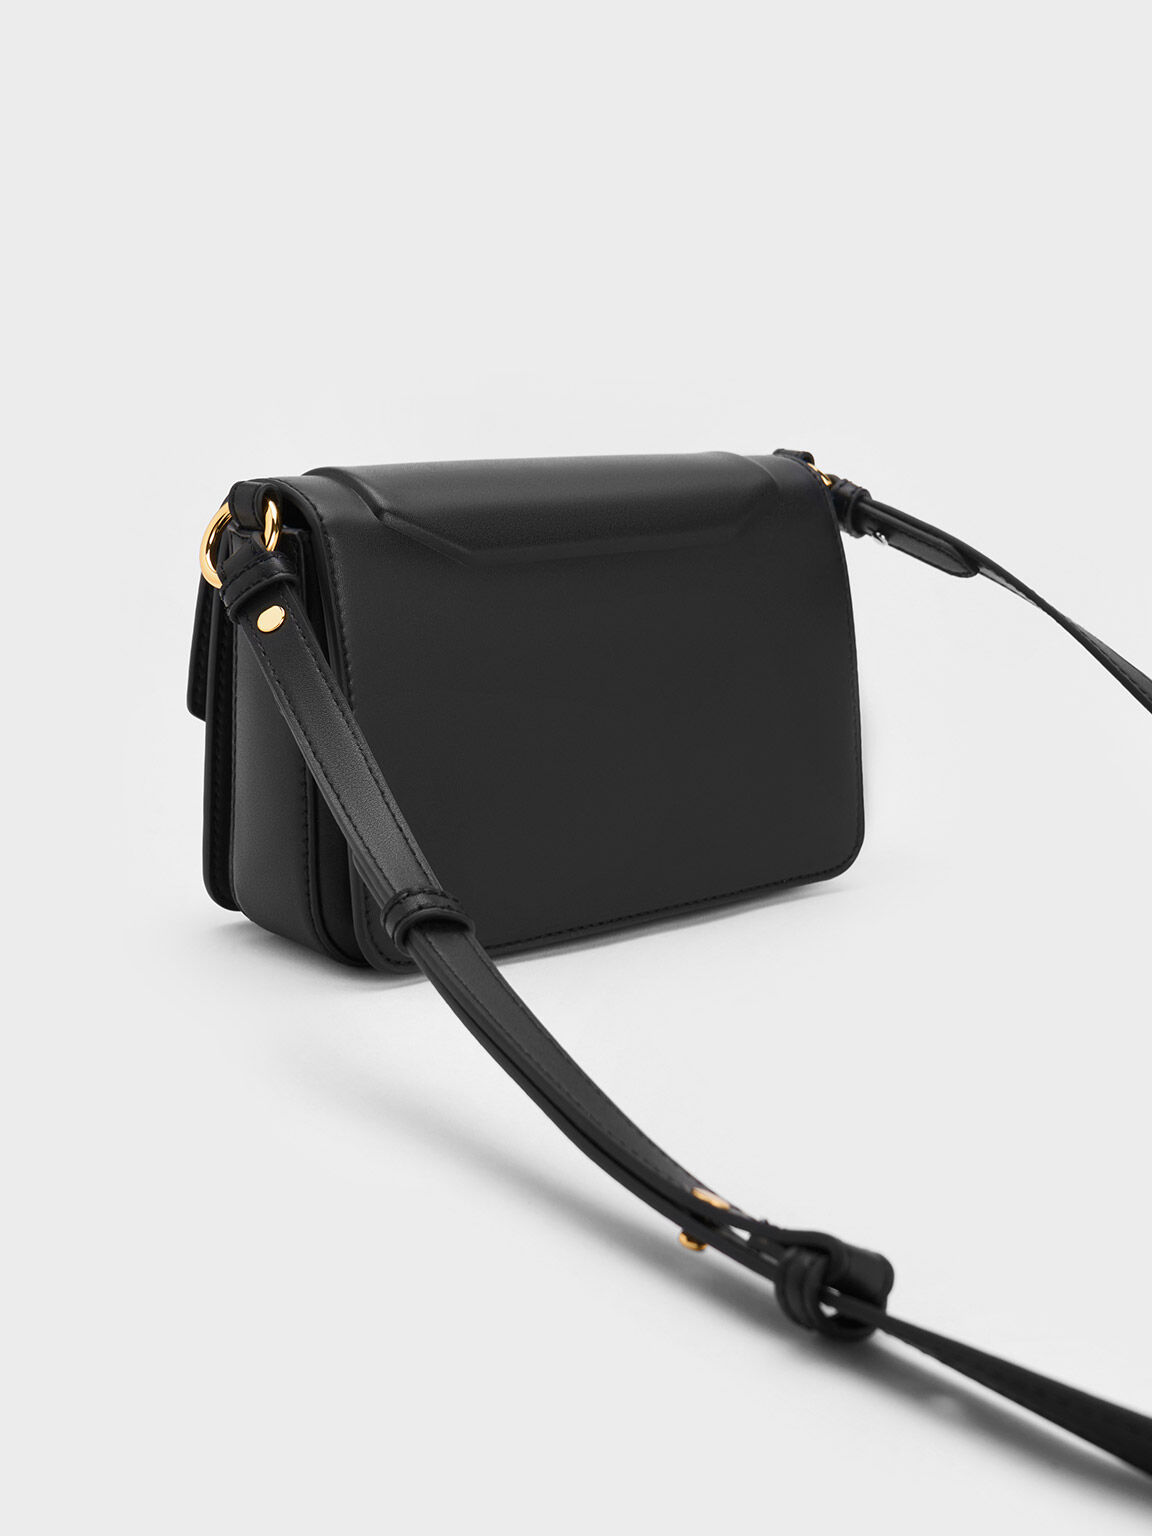 حقيبة كاليندا مربعة مع حلية معدنية, أسود, hi-res